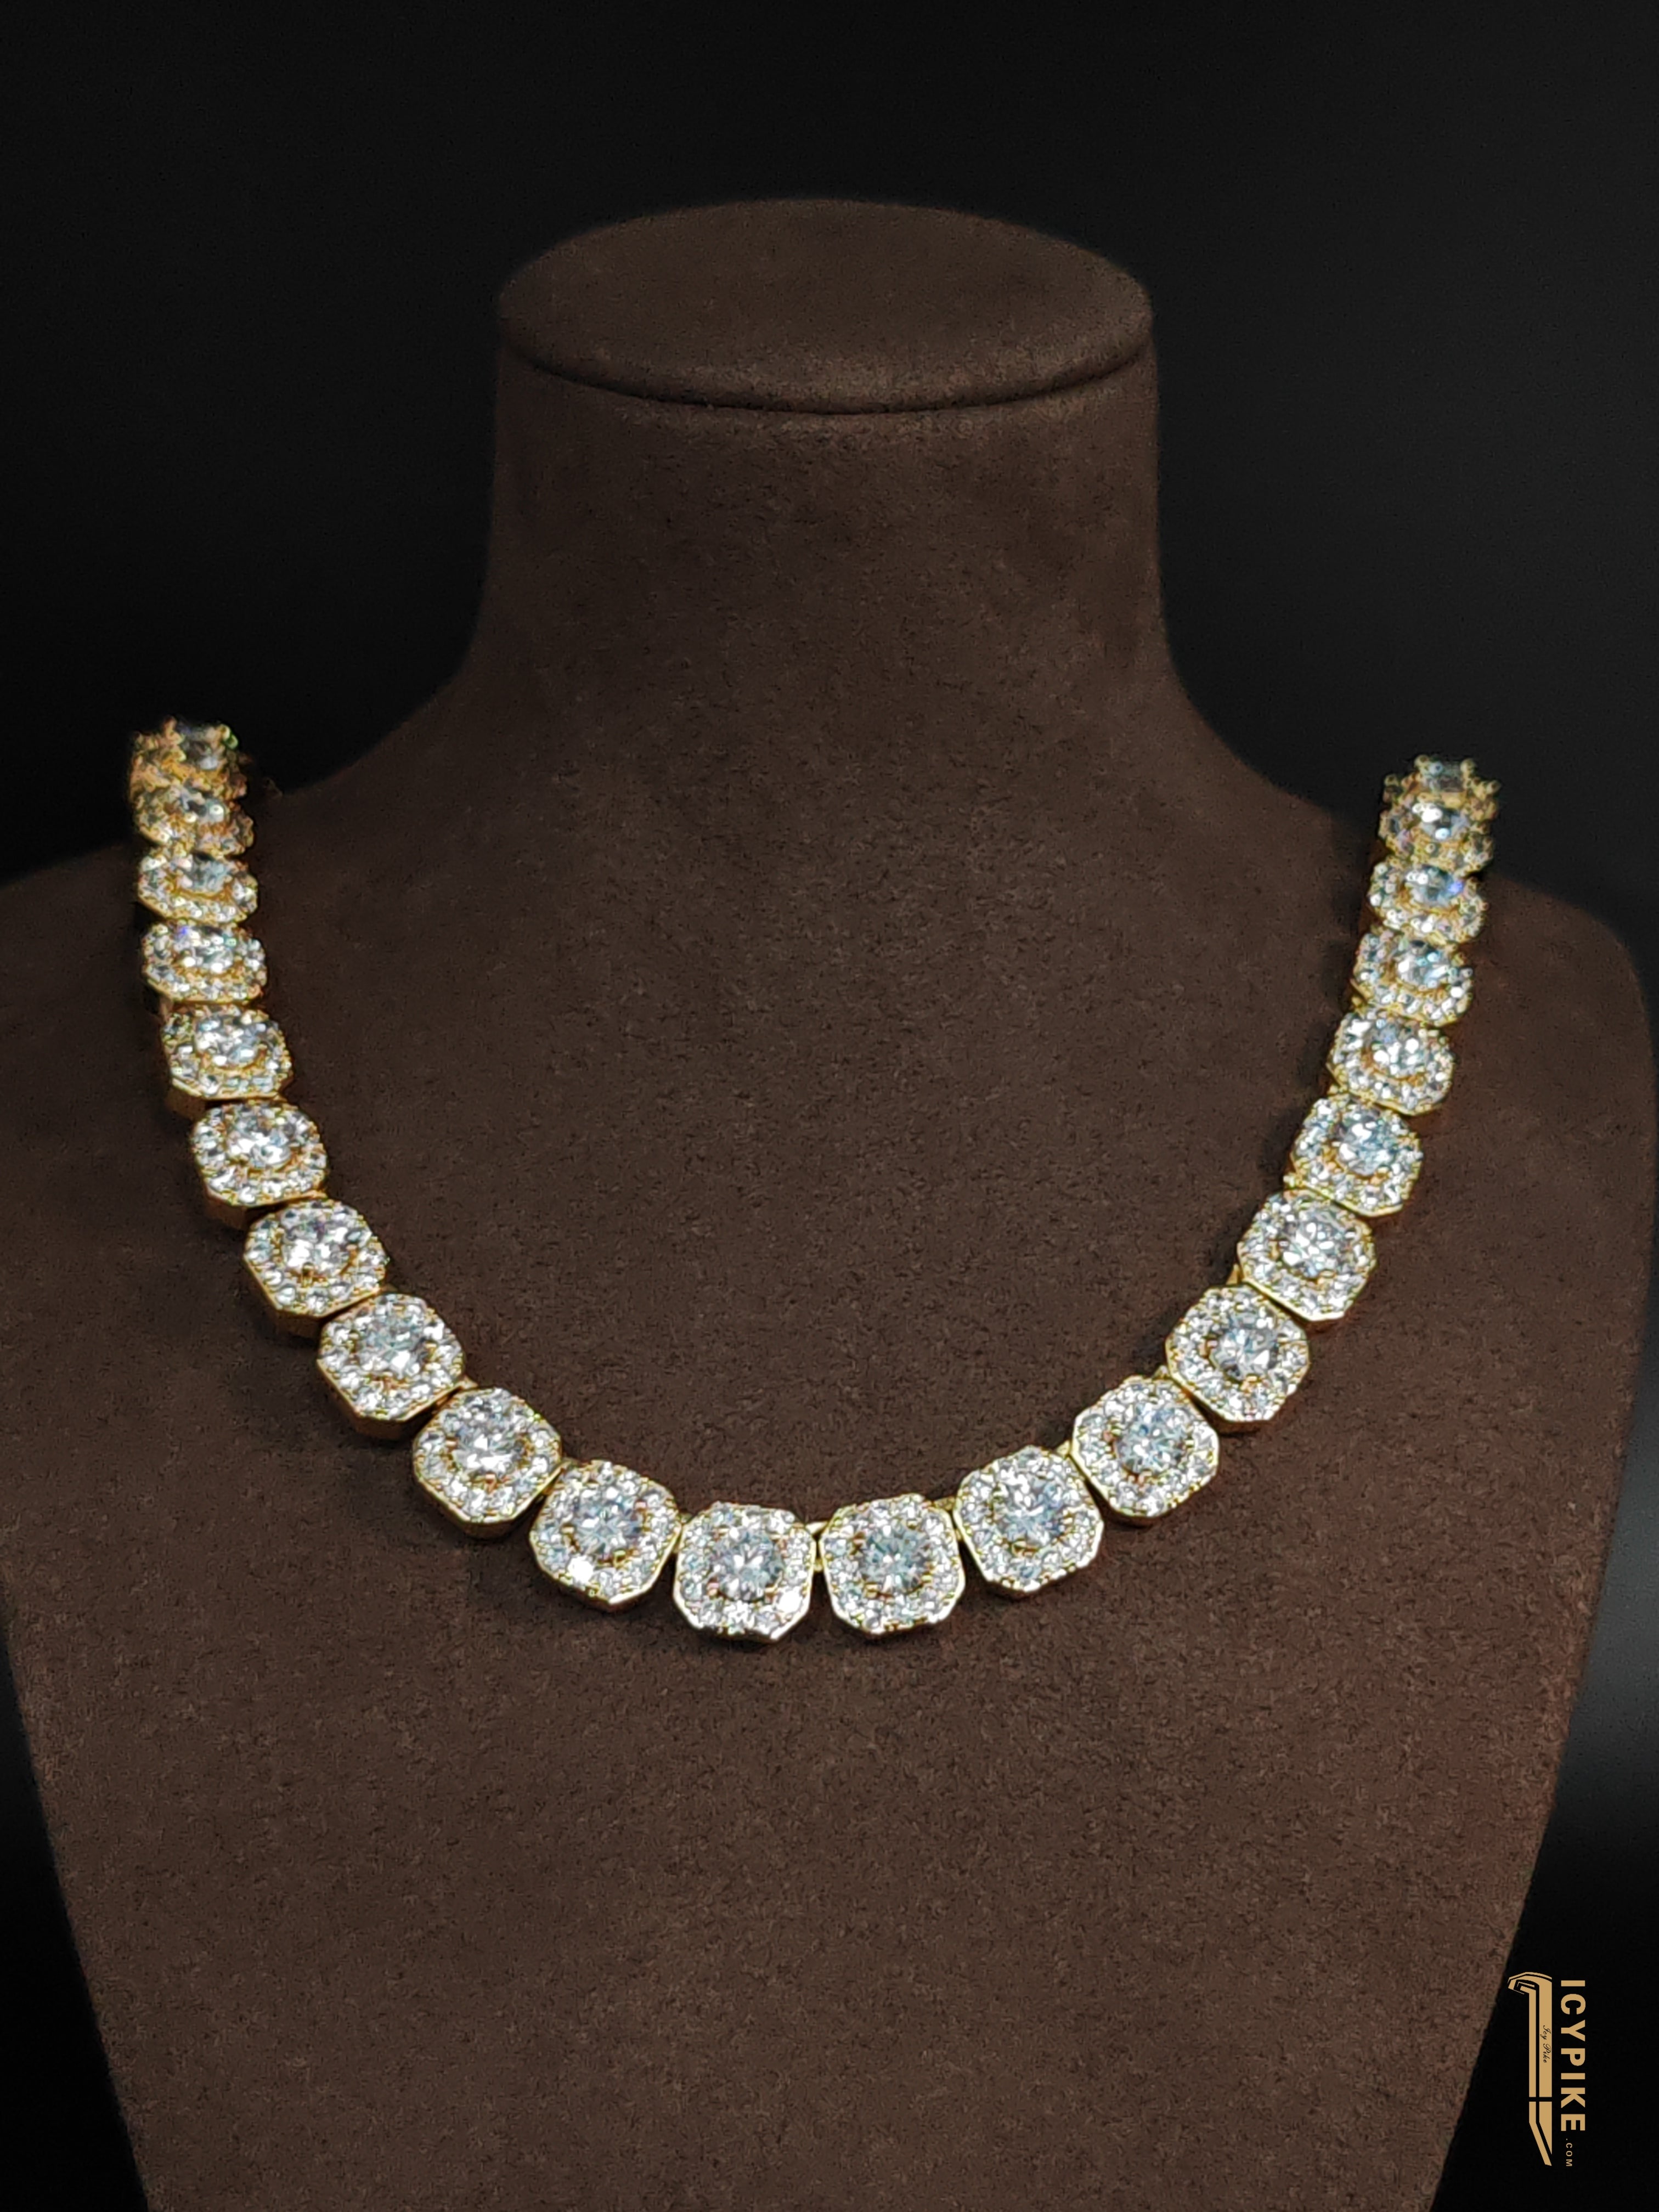 Luxury Diamond Pendant Ice Cube | Chopard® 797005-5003